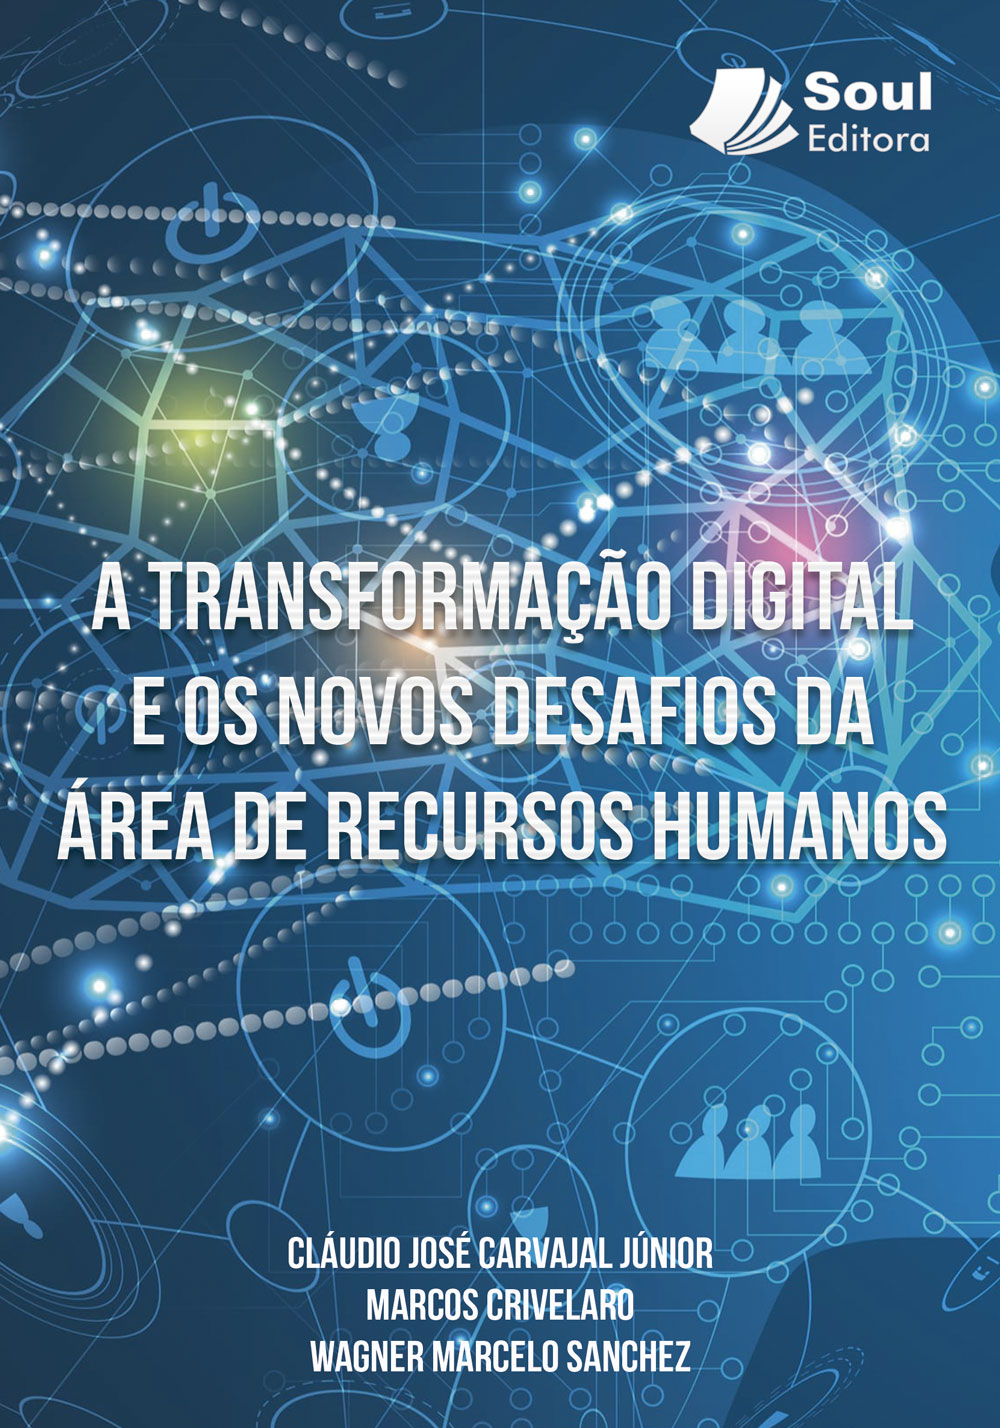 A Transformação digital e os novos desafios da área de recursos humanos